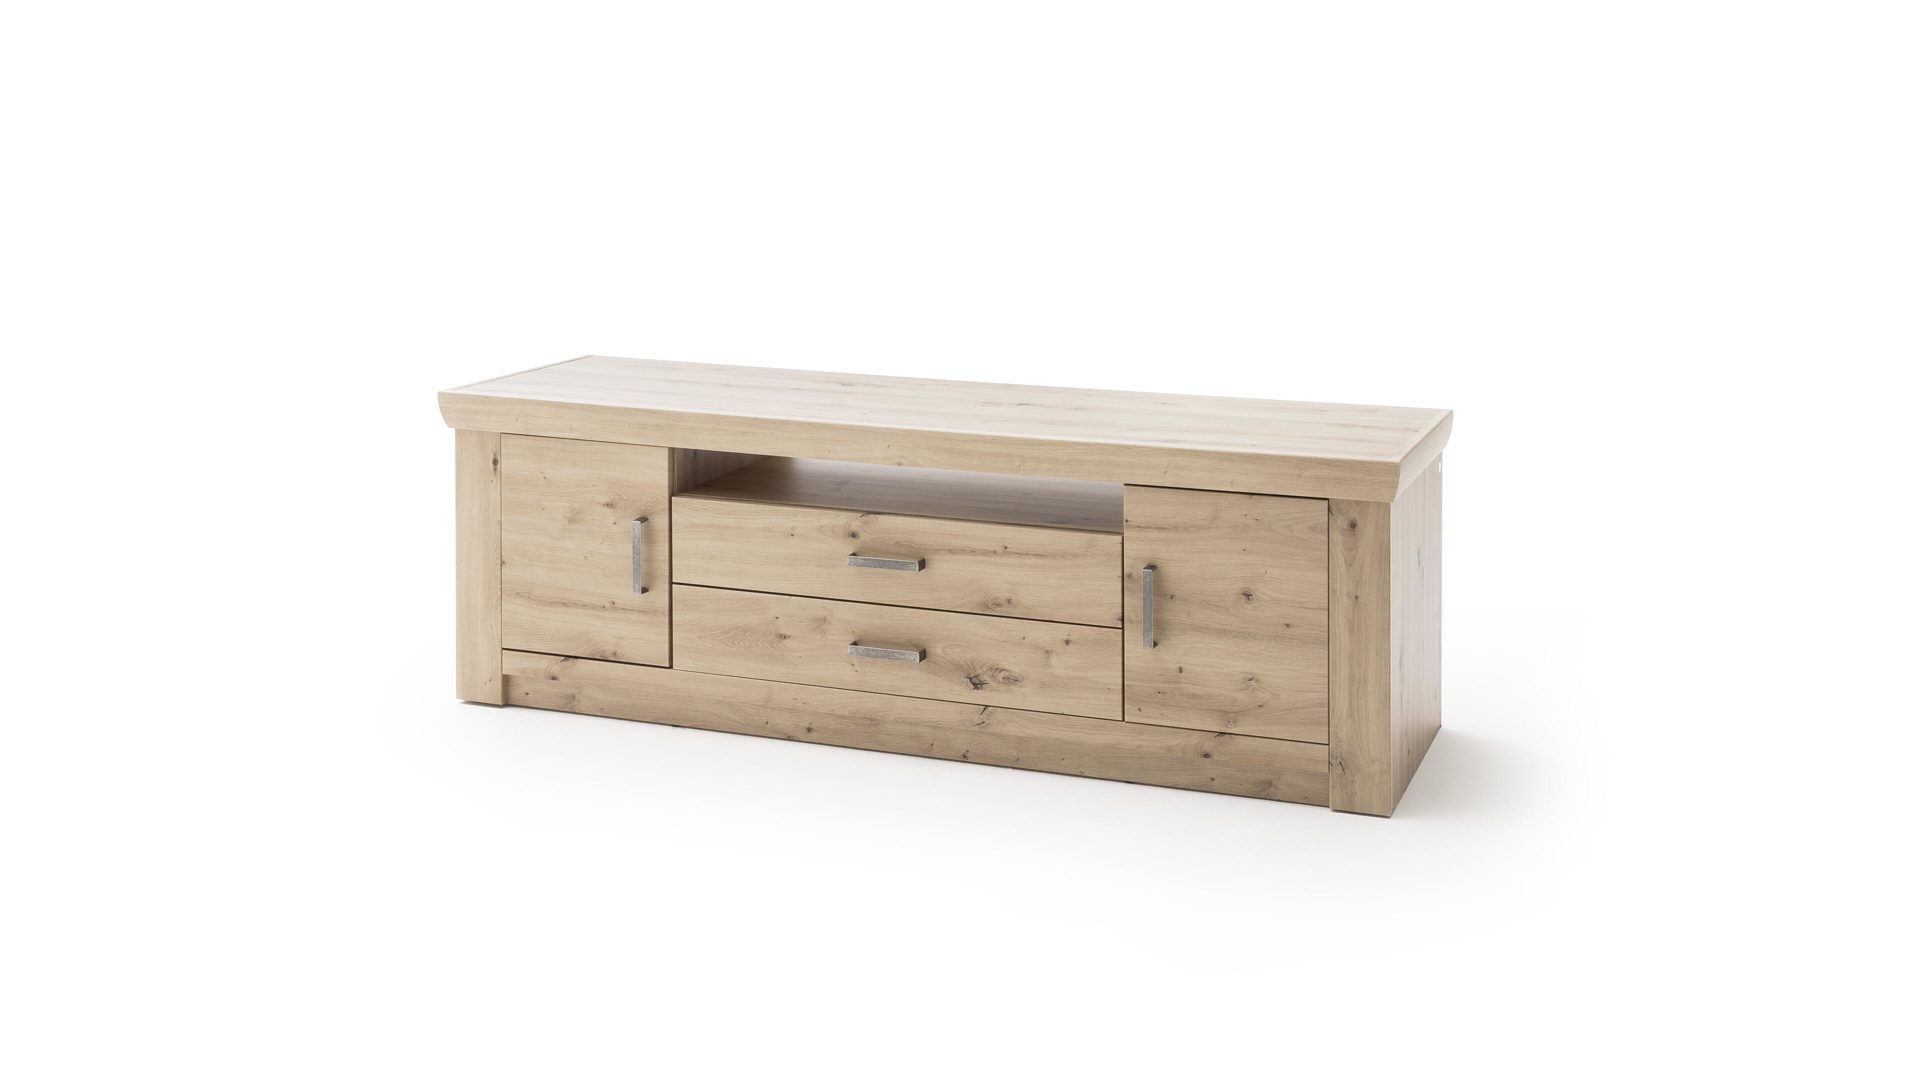 Lowboard Mca furniture aus Holz in Holzfarben TV-Lowboard balkeneichefarbene Kunststoffoberflächen – zwei Schubladen, zwei Türen